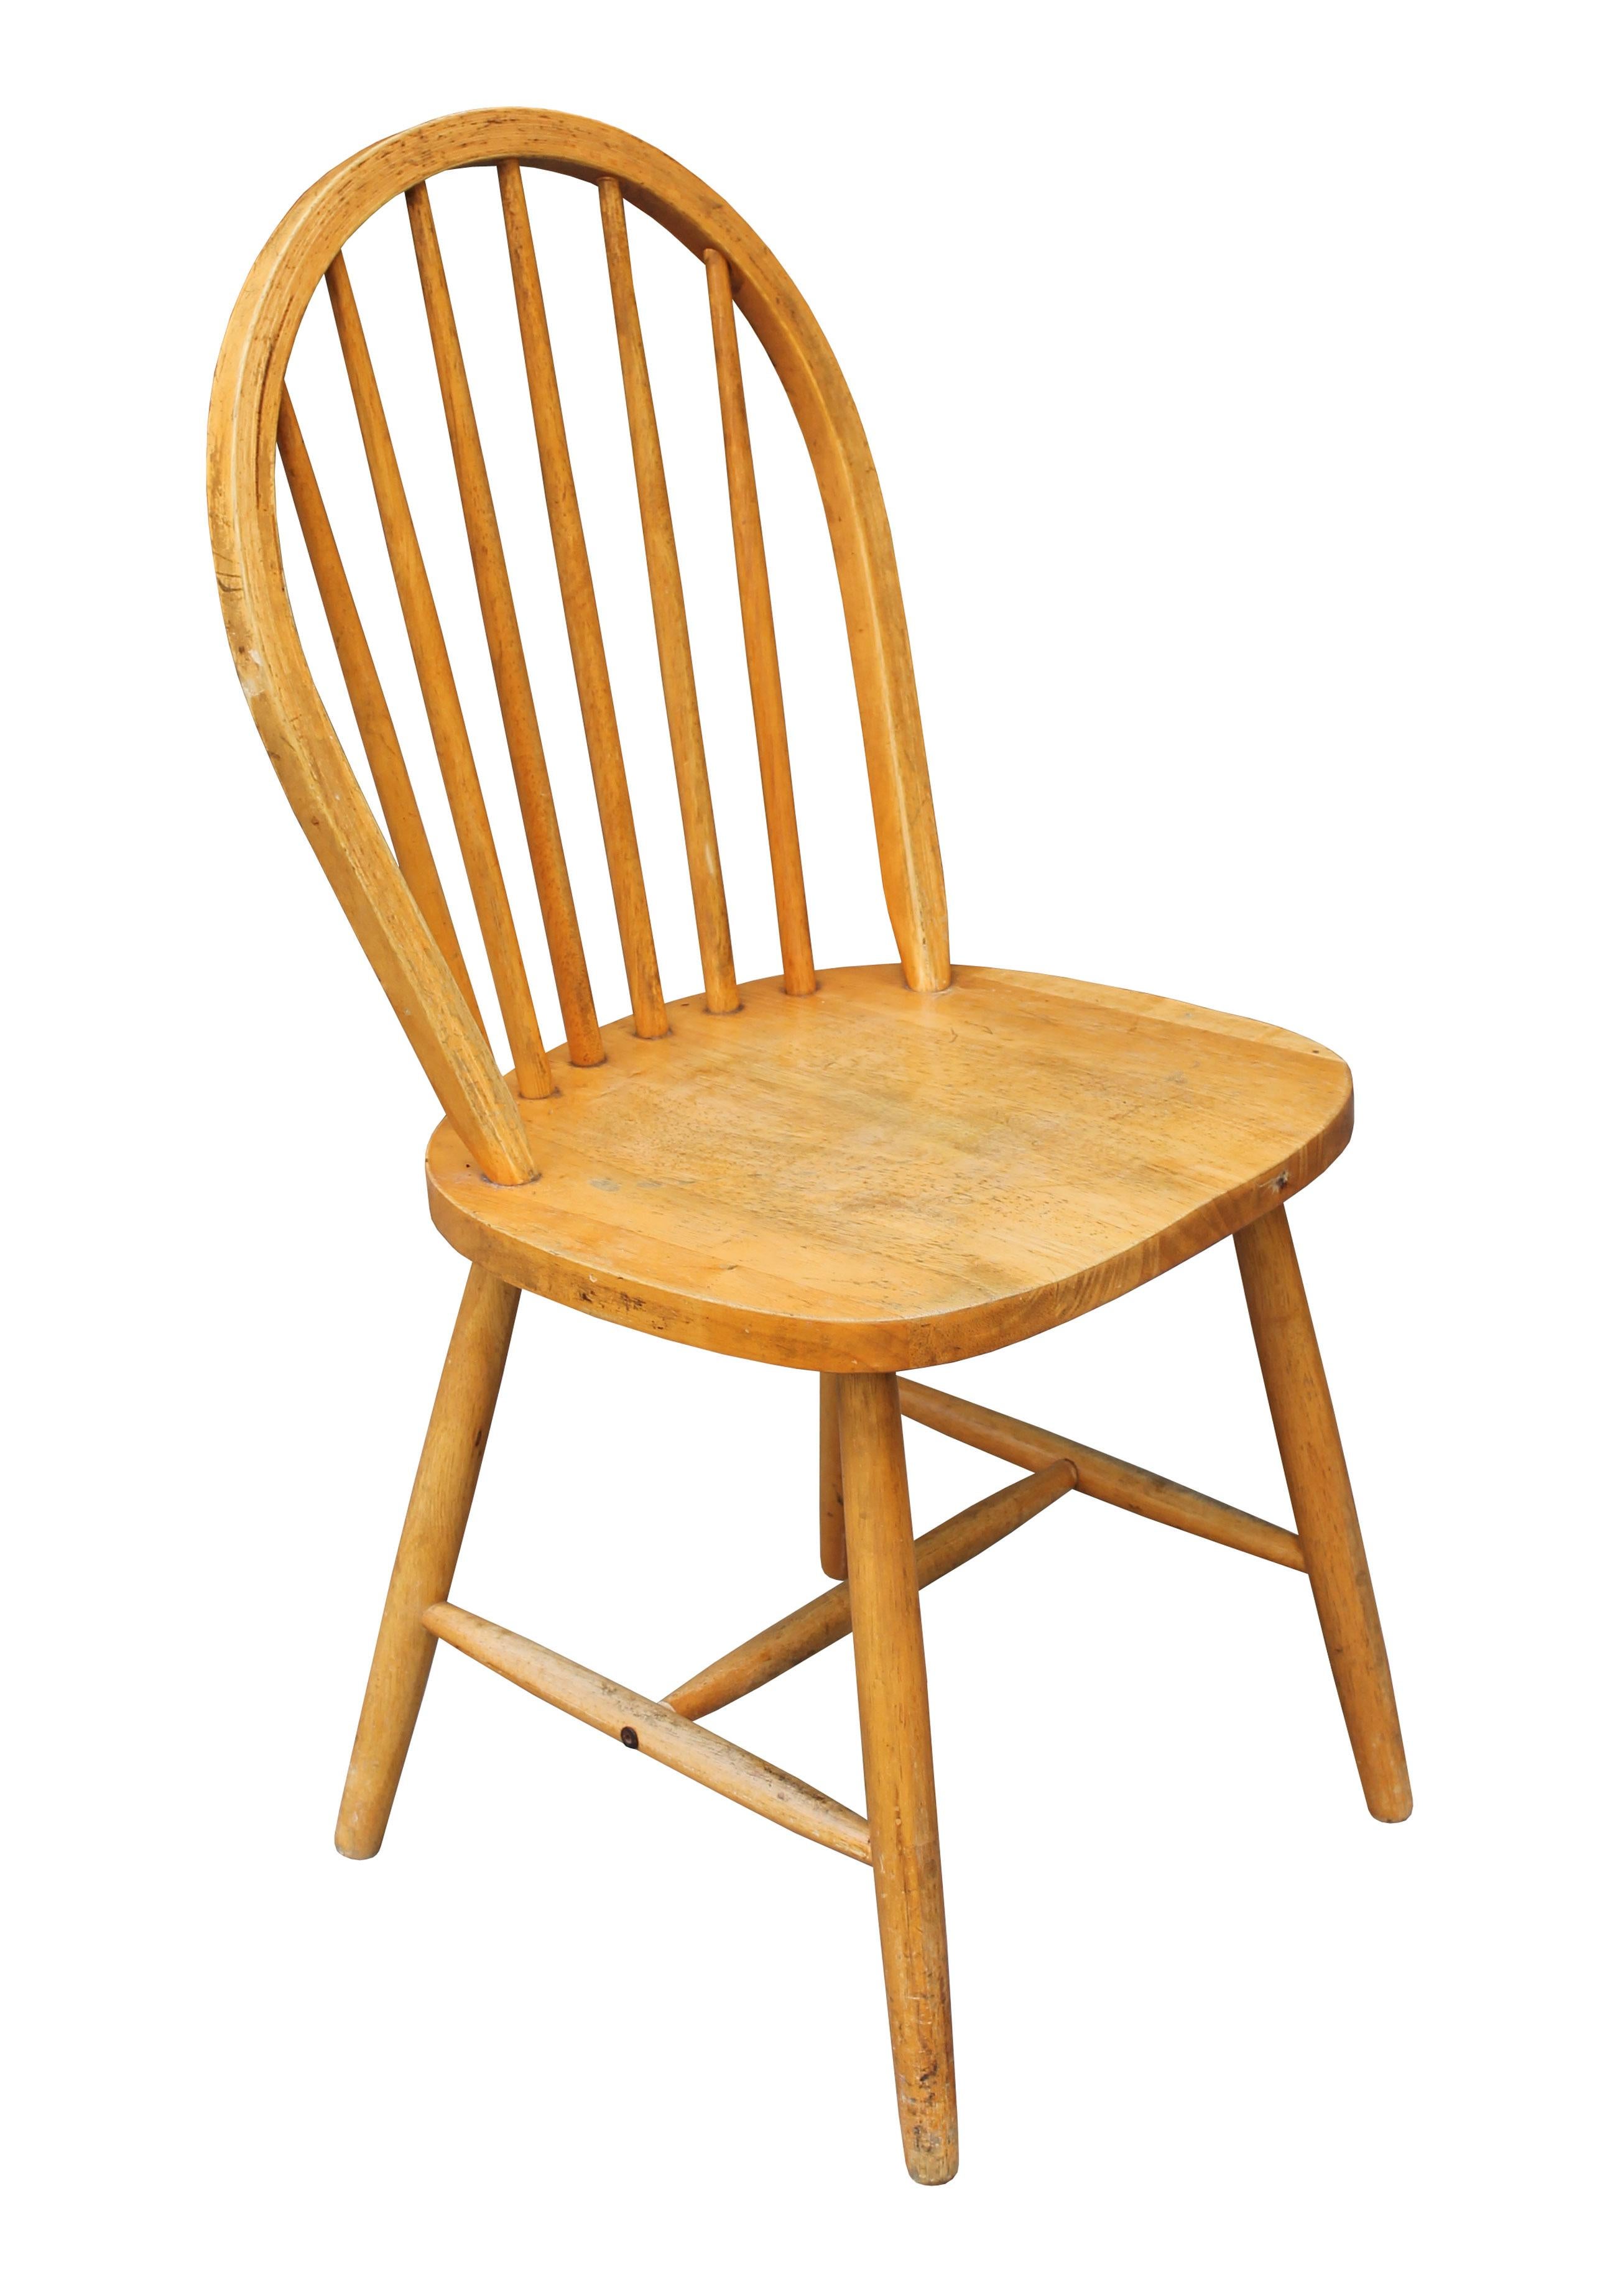 Zwei Esszimmerstühle nach dem Vorbild der originalen Ercol Windsor Chairs Modell 400. Beide haben das klassische Design mit der dampfgebogenen Rückenschiene, die ein sauberes, geradliniges Profil bildet. Auch sie haben dieselben konischen Beine und